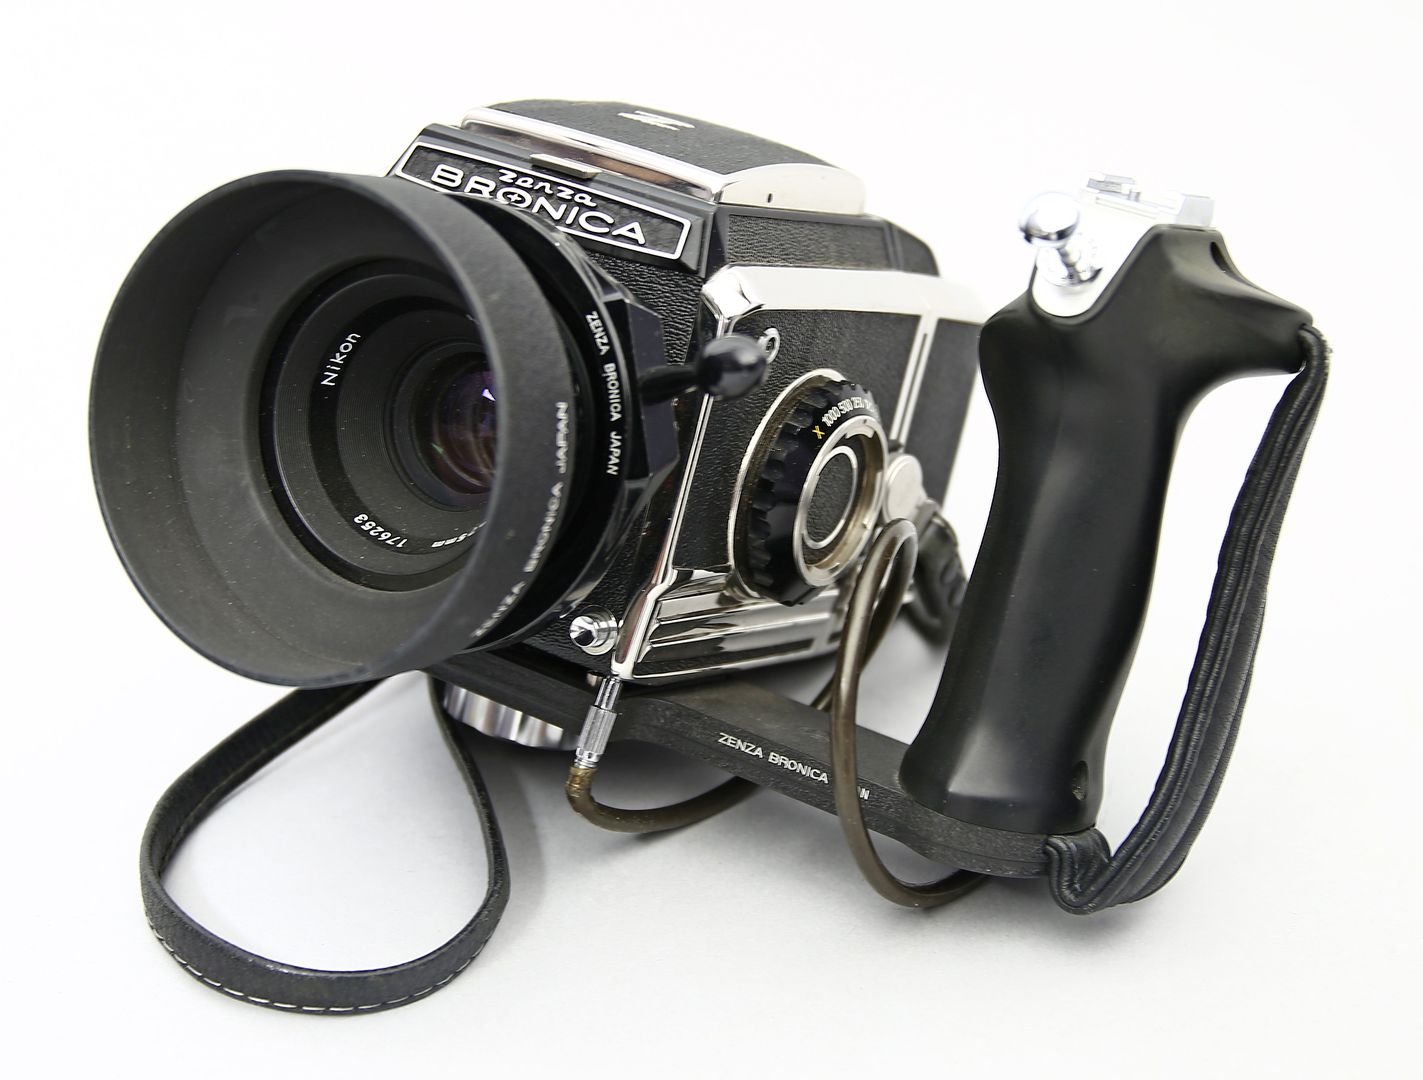 Kamera "S2a" mit Speedgrip, Zenza Bronica.